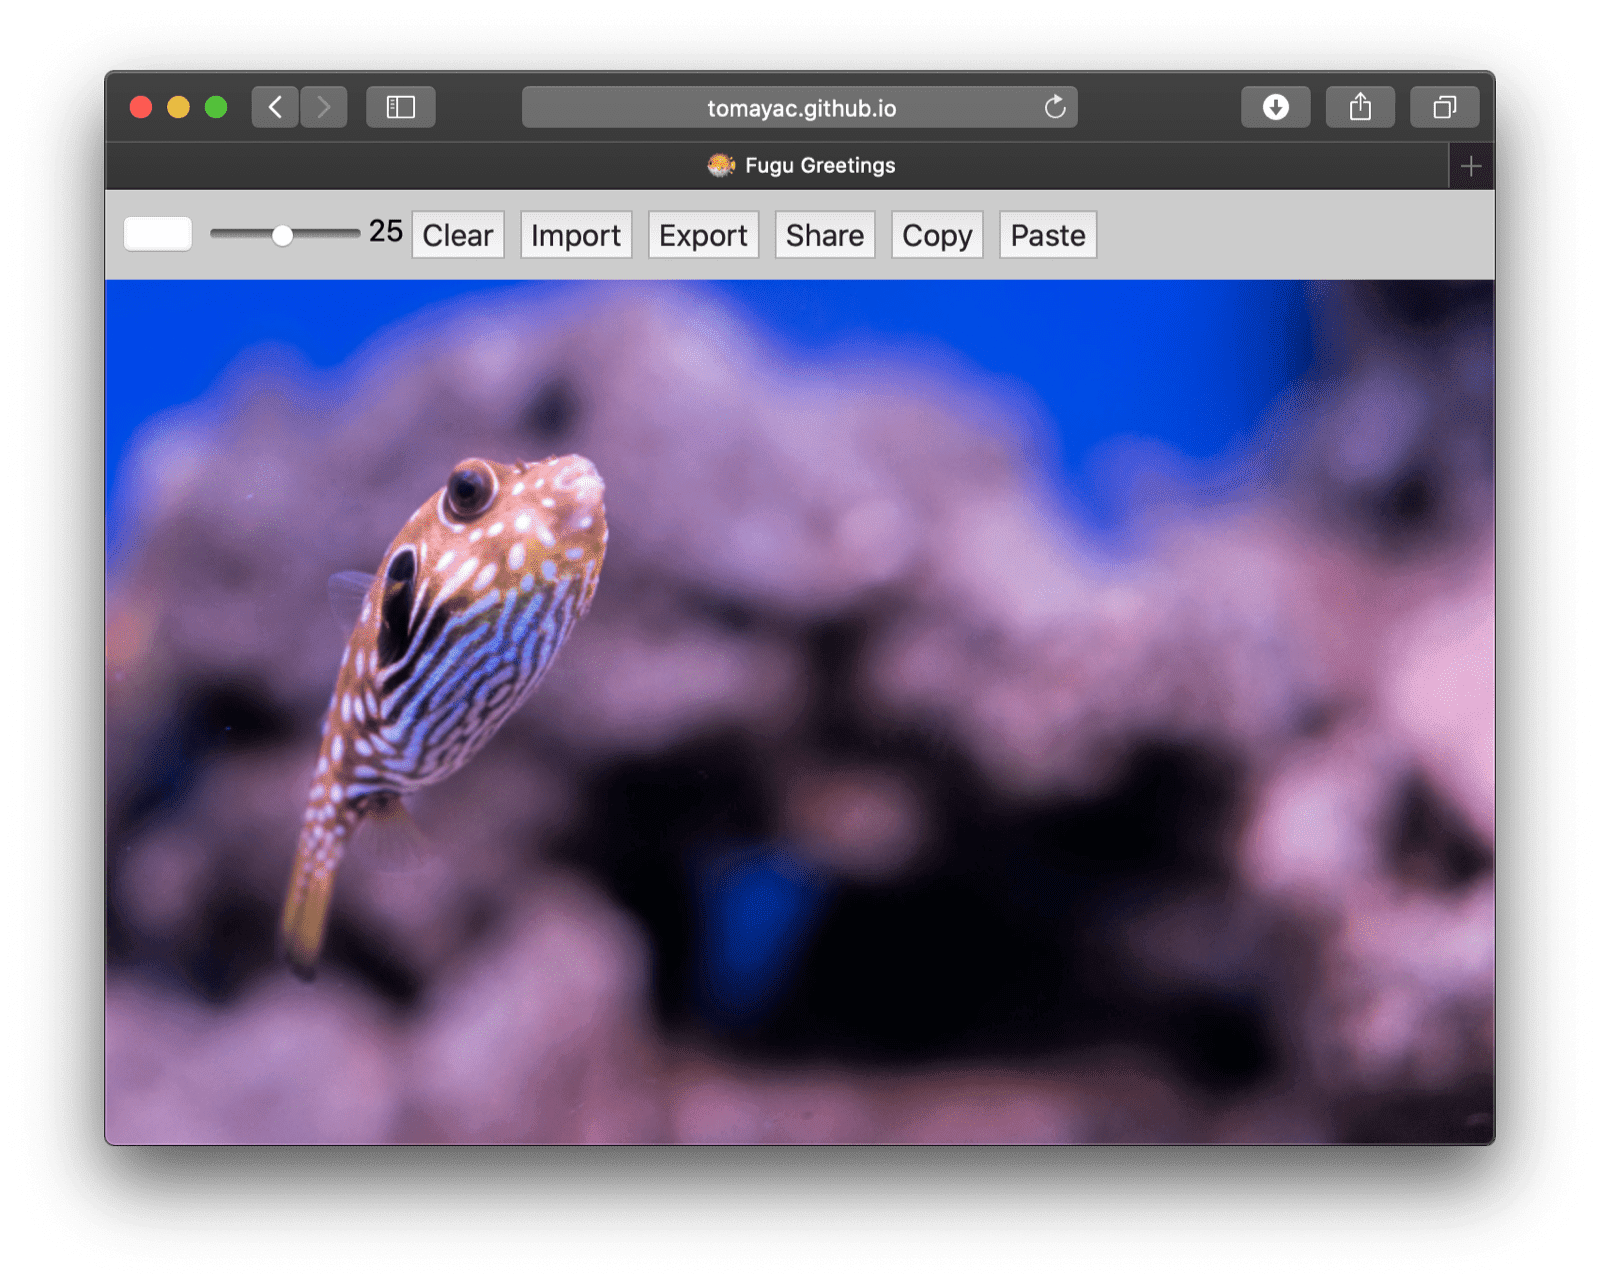 Auf dem Safari-Desktop ausgeführte Fugu-Begrüßungen mit weniger verfügbaren Funktionen